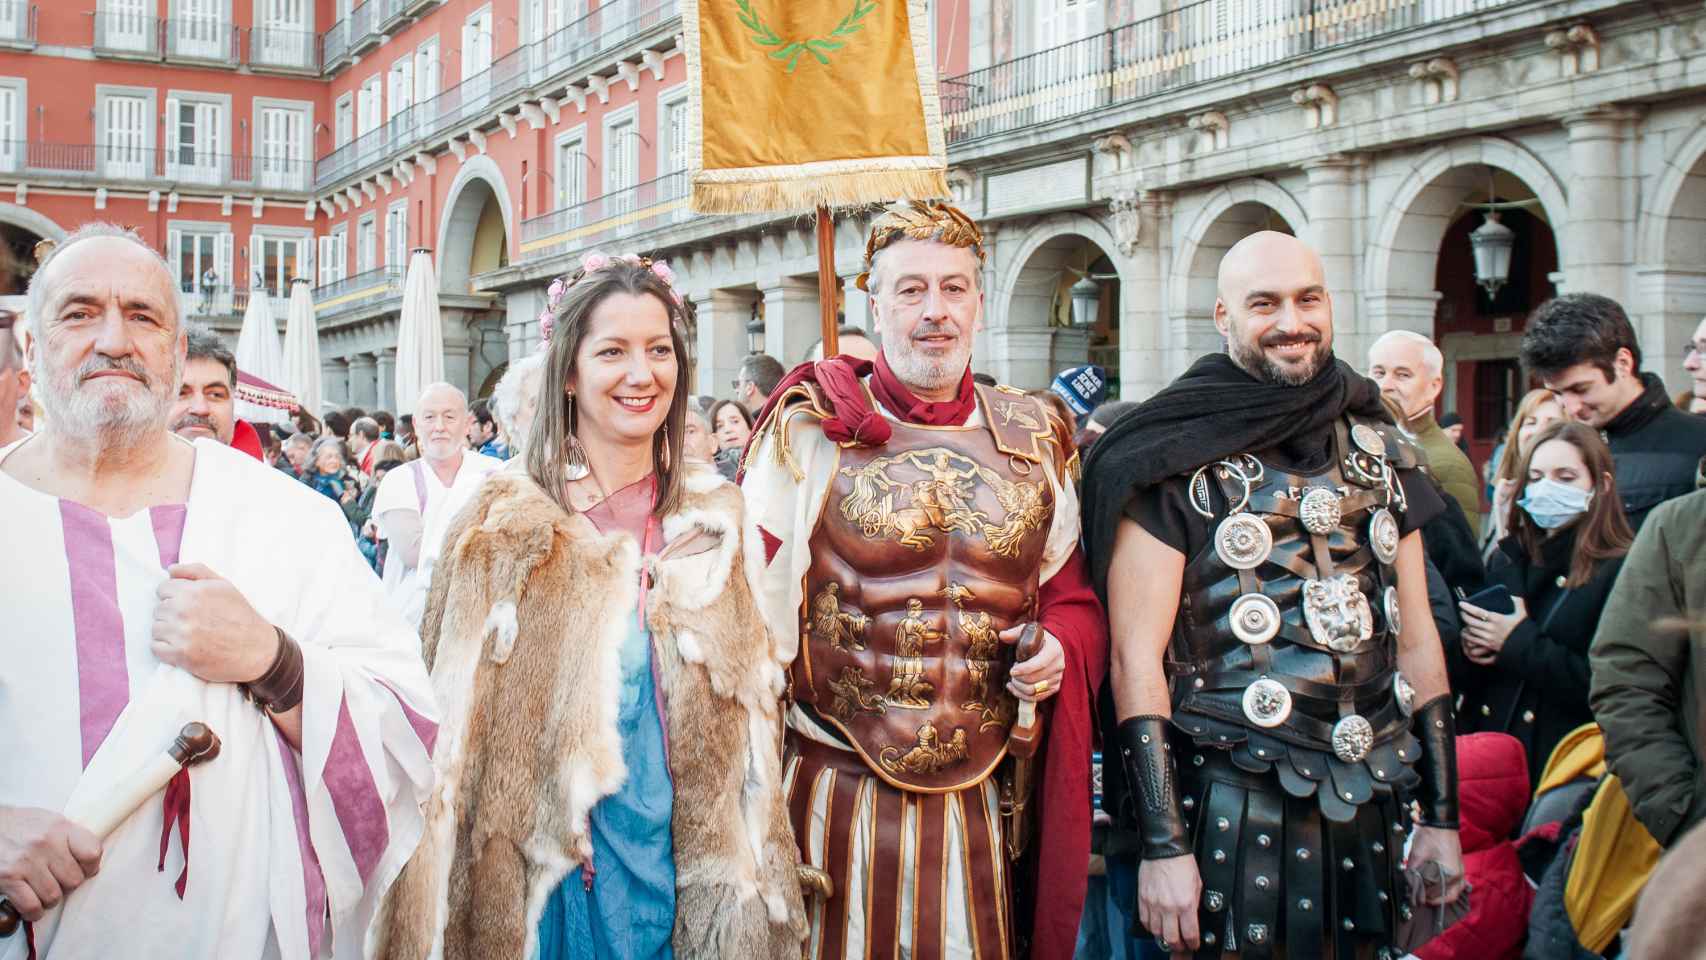 La alcaldesa de Lugo, Lara Méndez, escoltada por las huestes romanas junto al César, el fundador de la ciudad y un centurión.